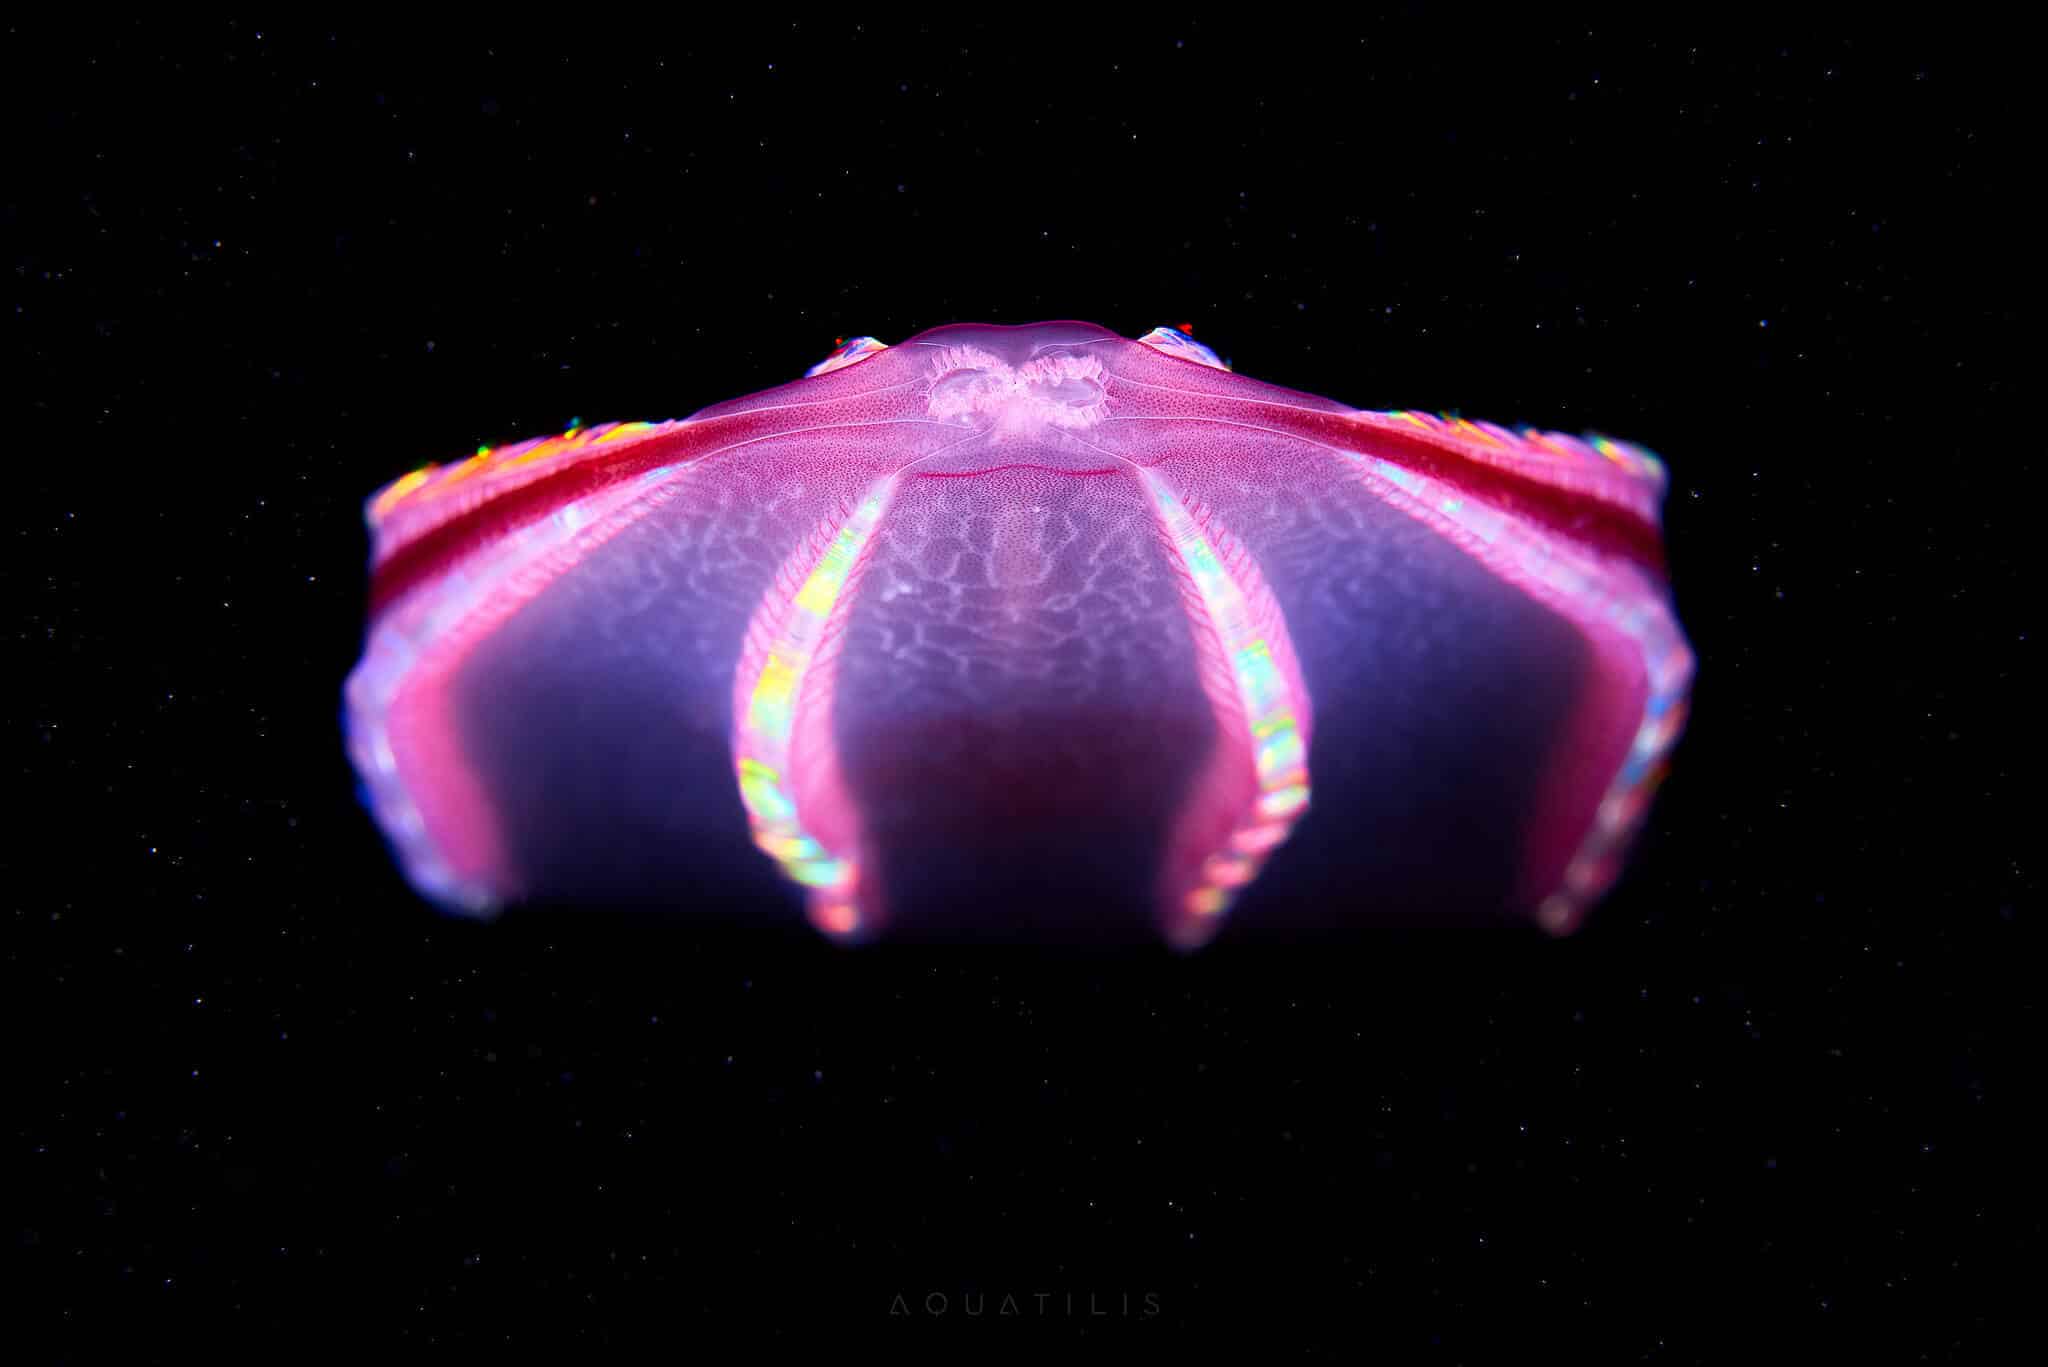 снимки удивительных существ из глубин мирового океана, фото 16